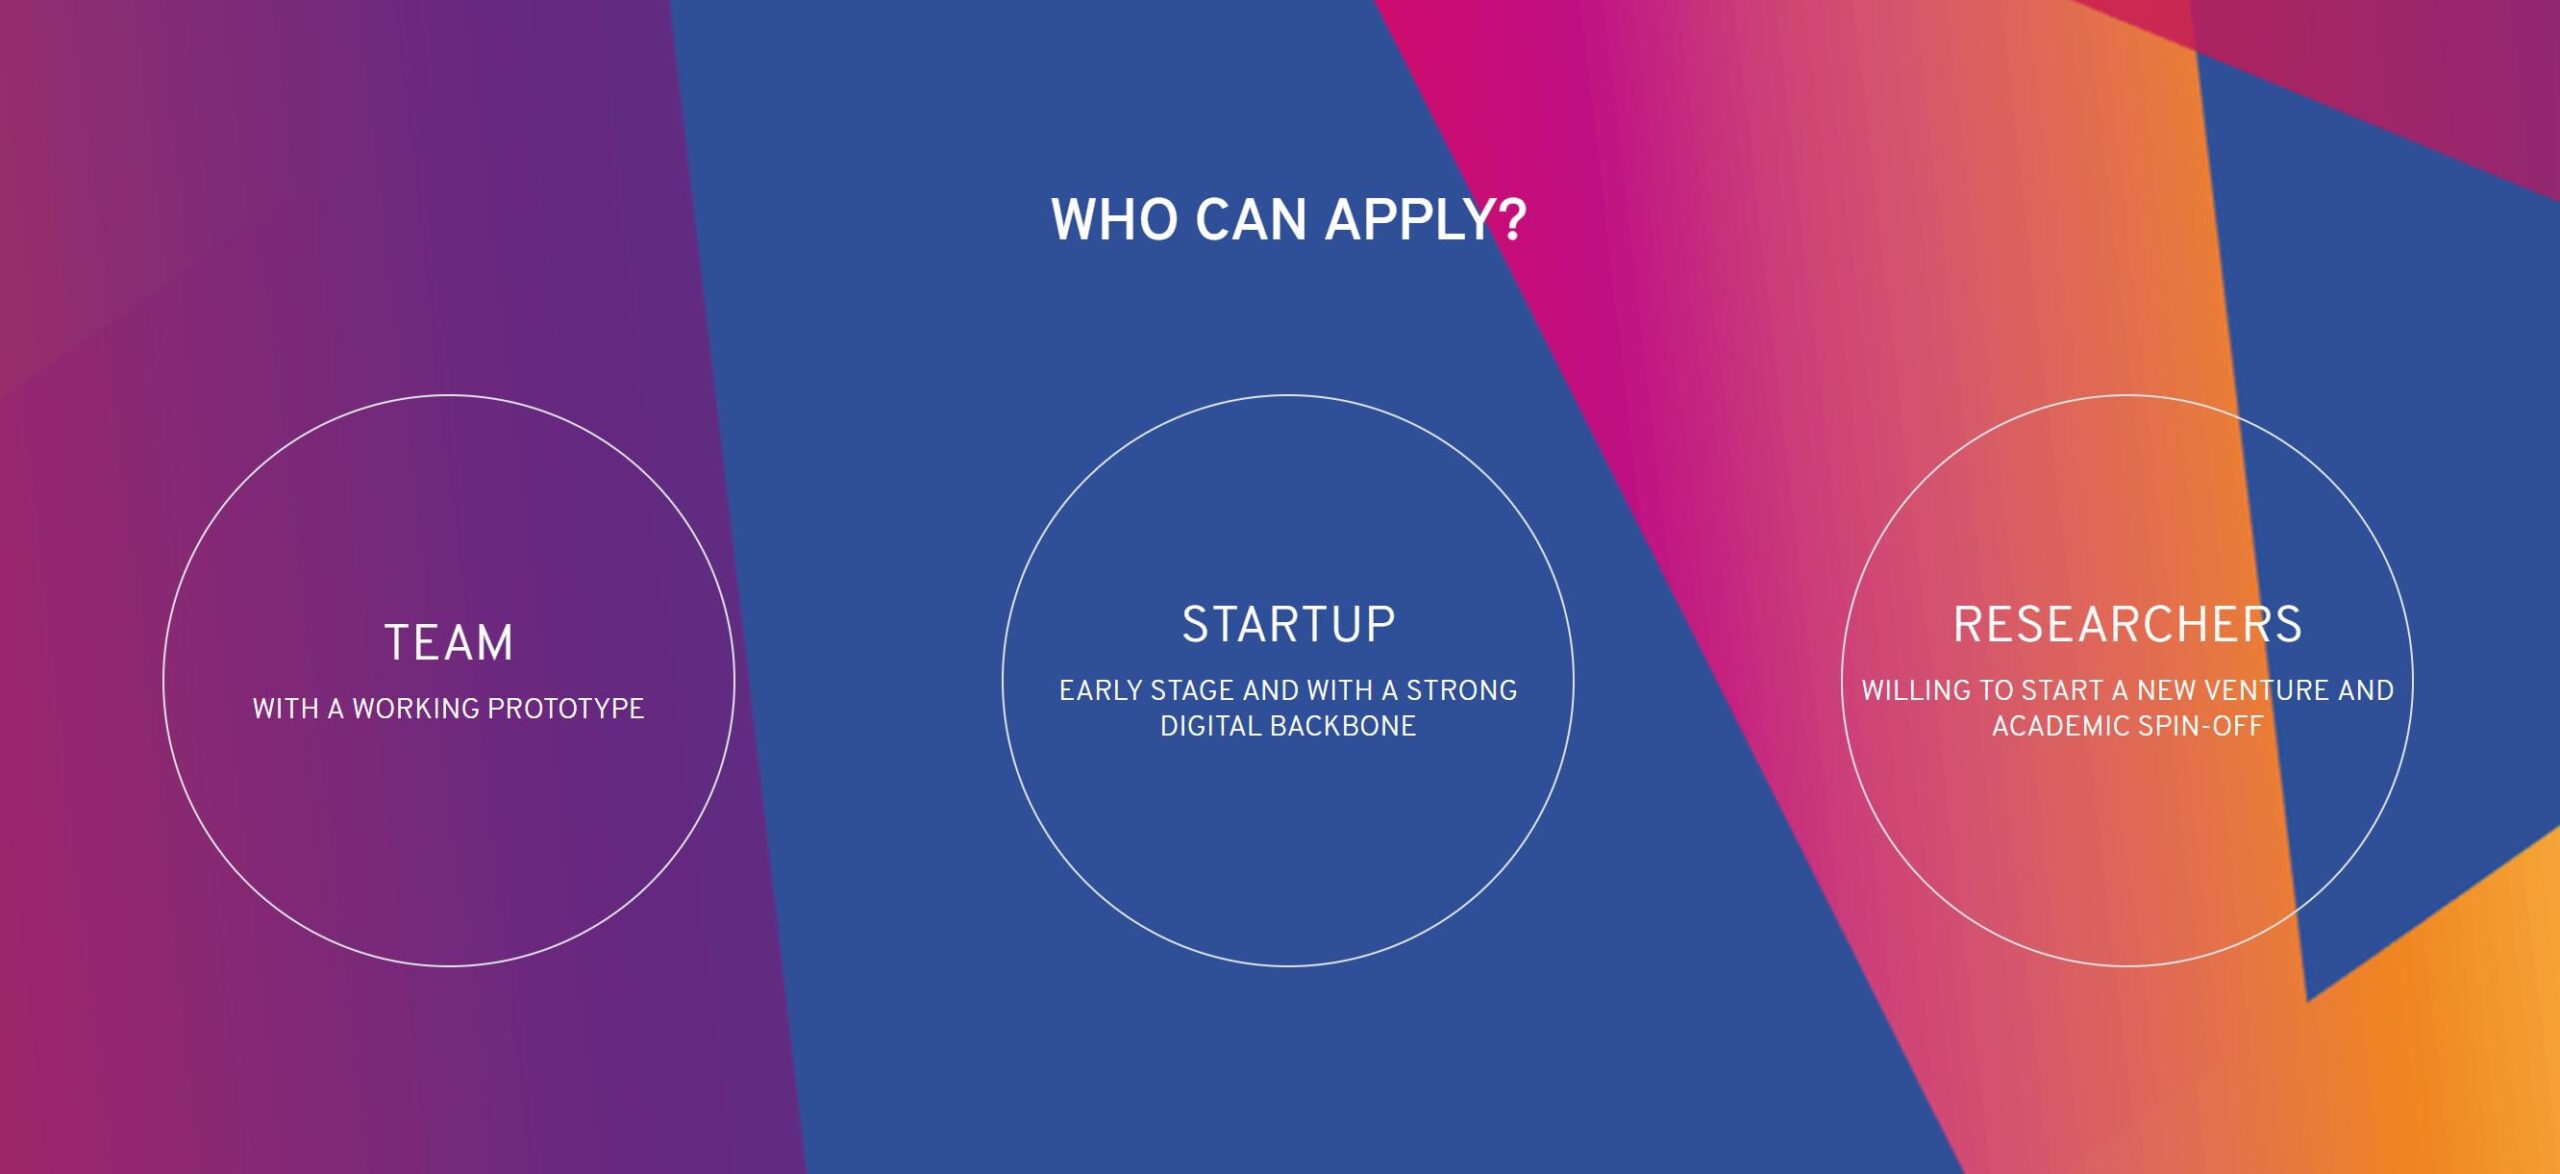 E-qube Startup&idea Challenge. C’è tempo fino al 28 settembre per candidarsi